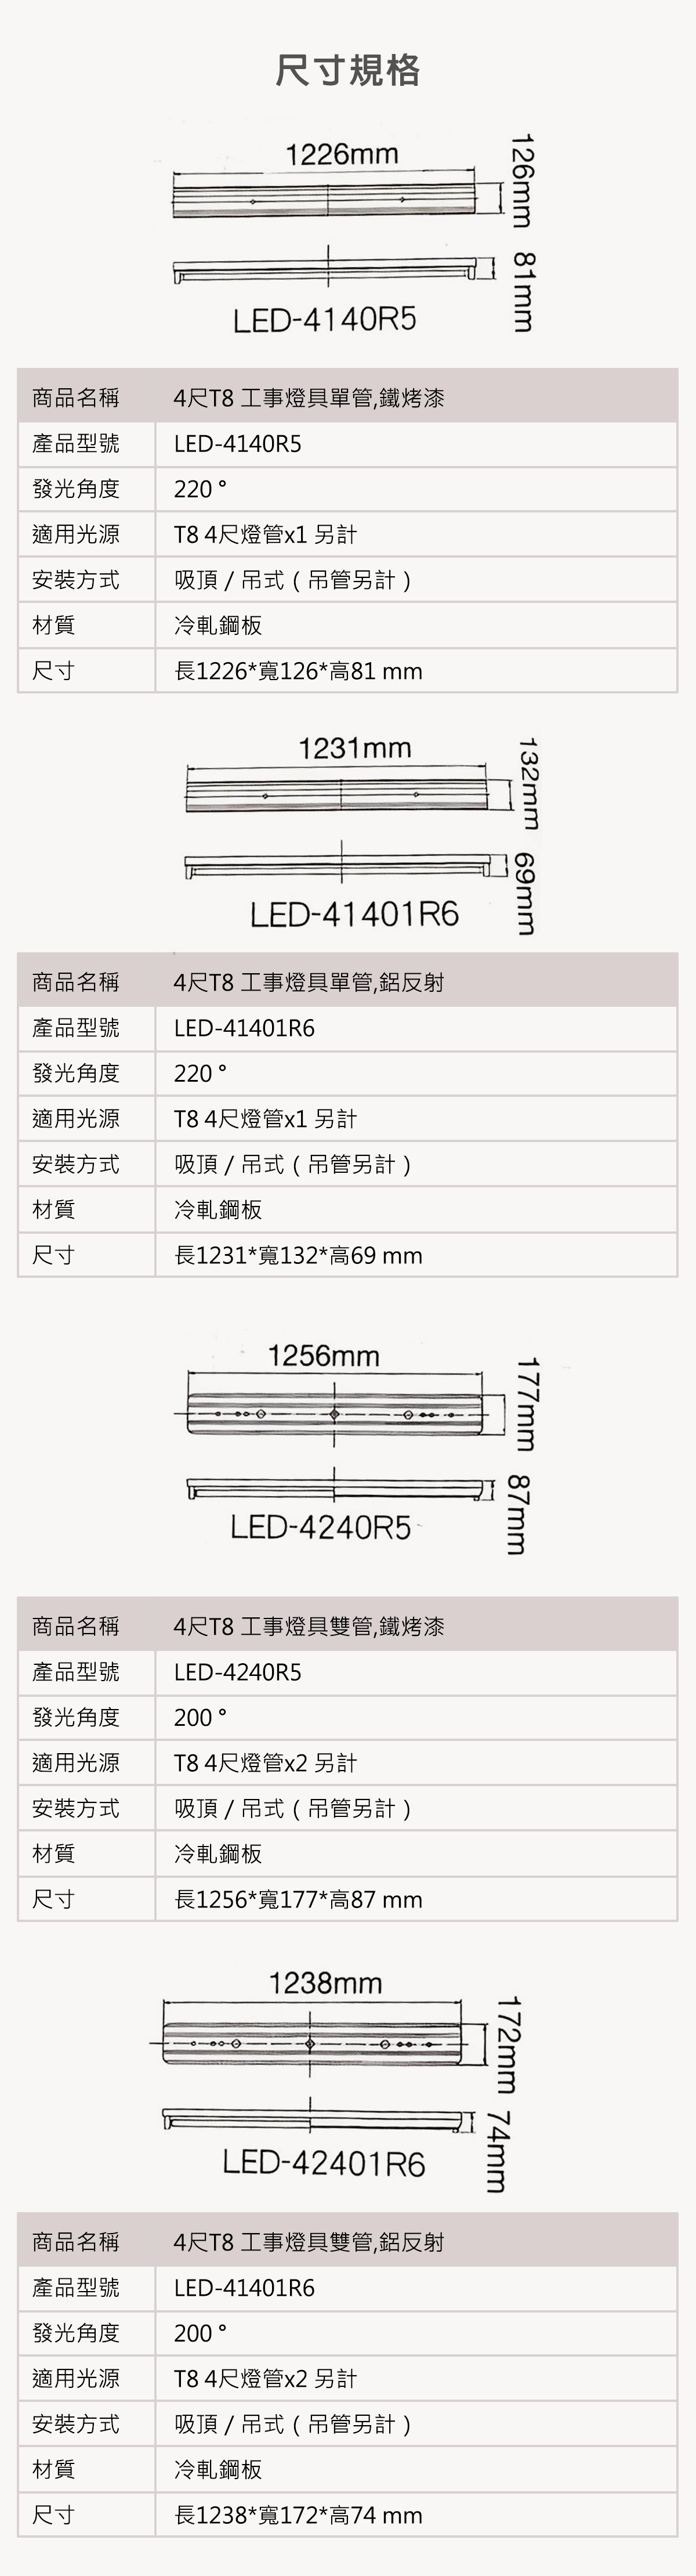 【舞光】LED T8 4尺工事燈 單管/雙管 鐵烤漆/鋁反射 吸吊兩用 燈管另計